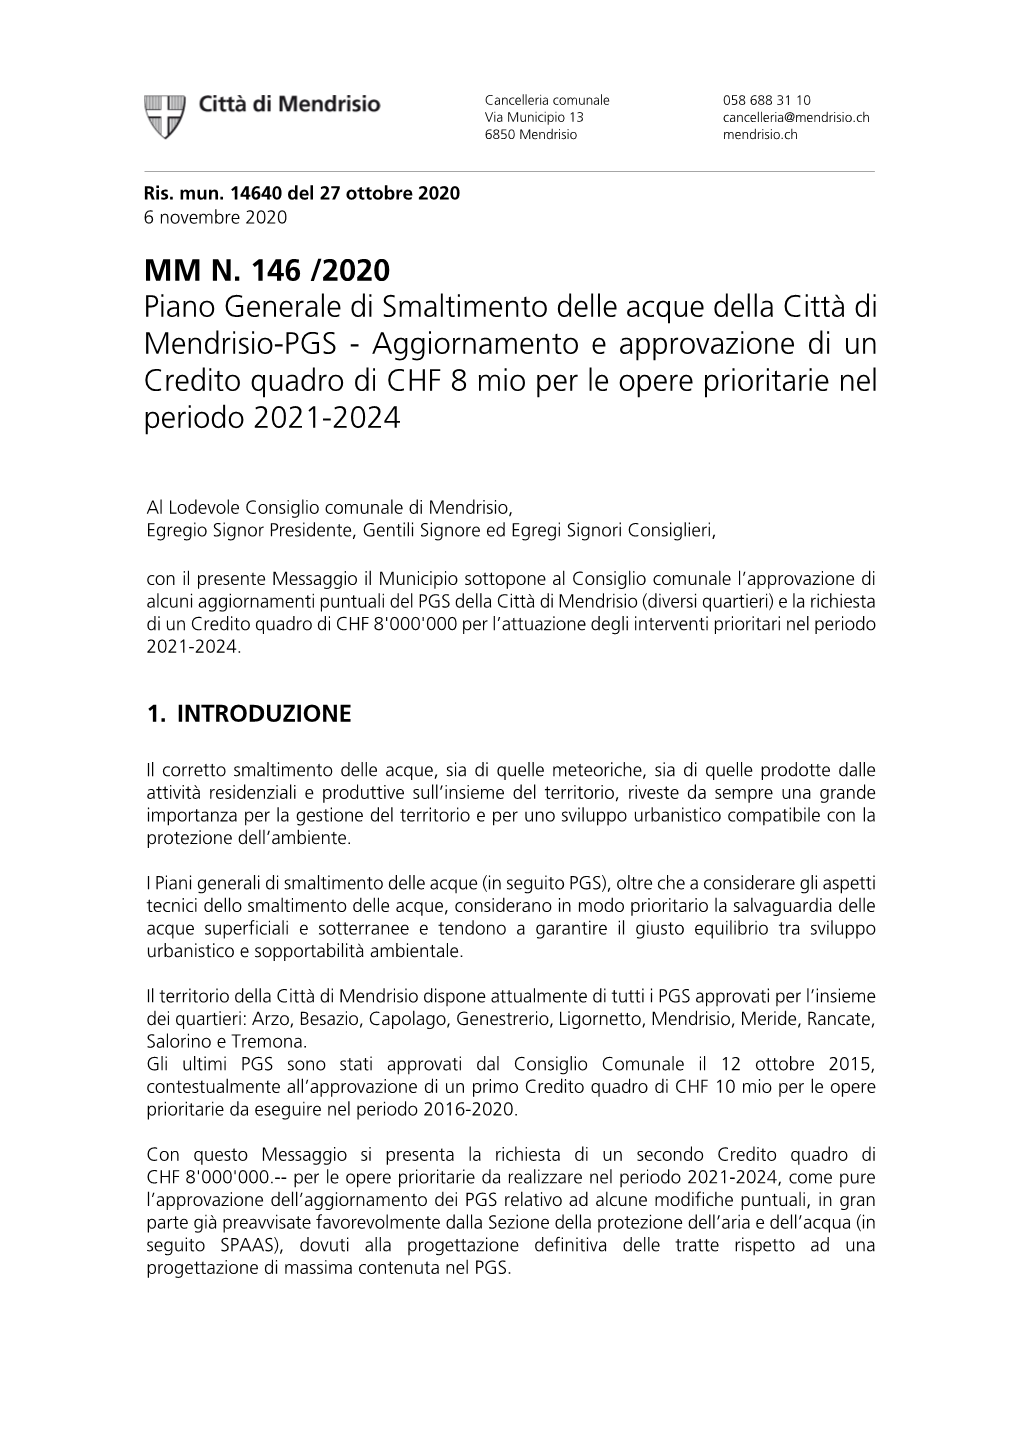 MM N. 146 /2020 Piano Generale Di Smaltimento Delle Acque Della Città